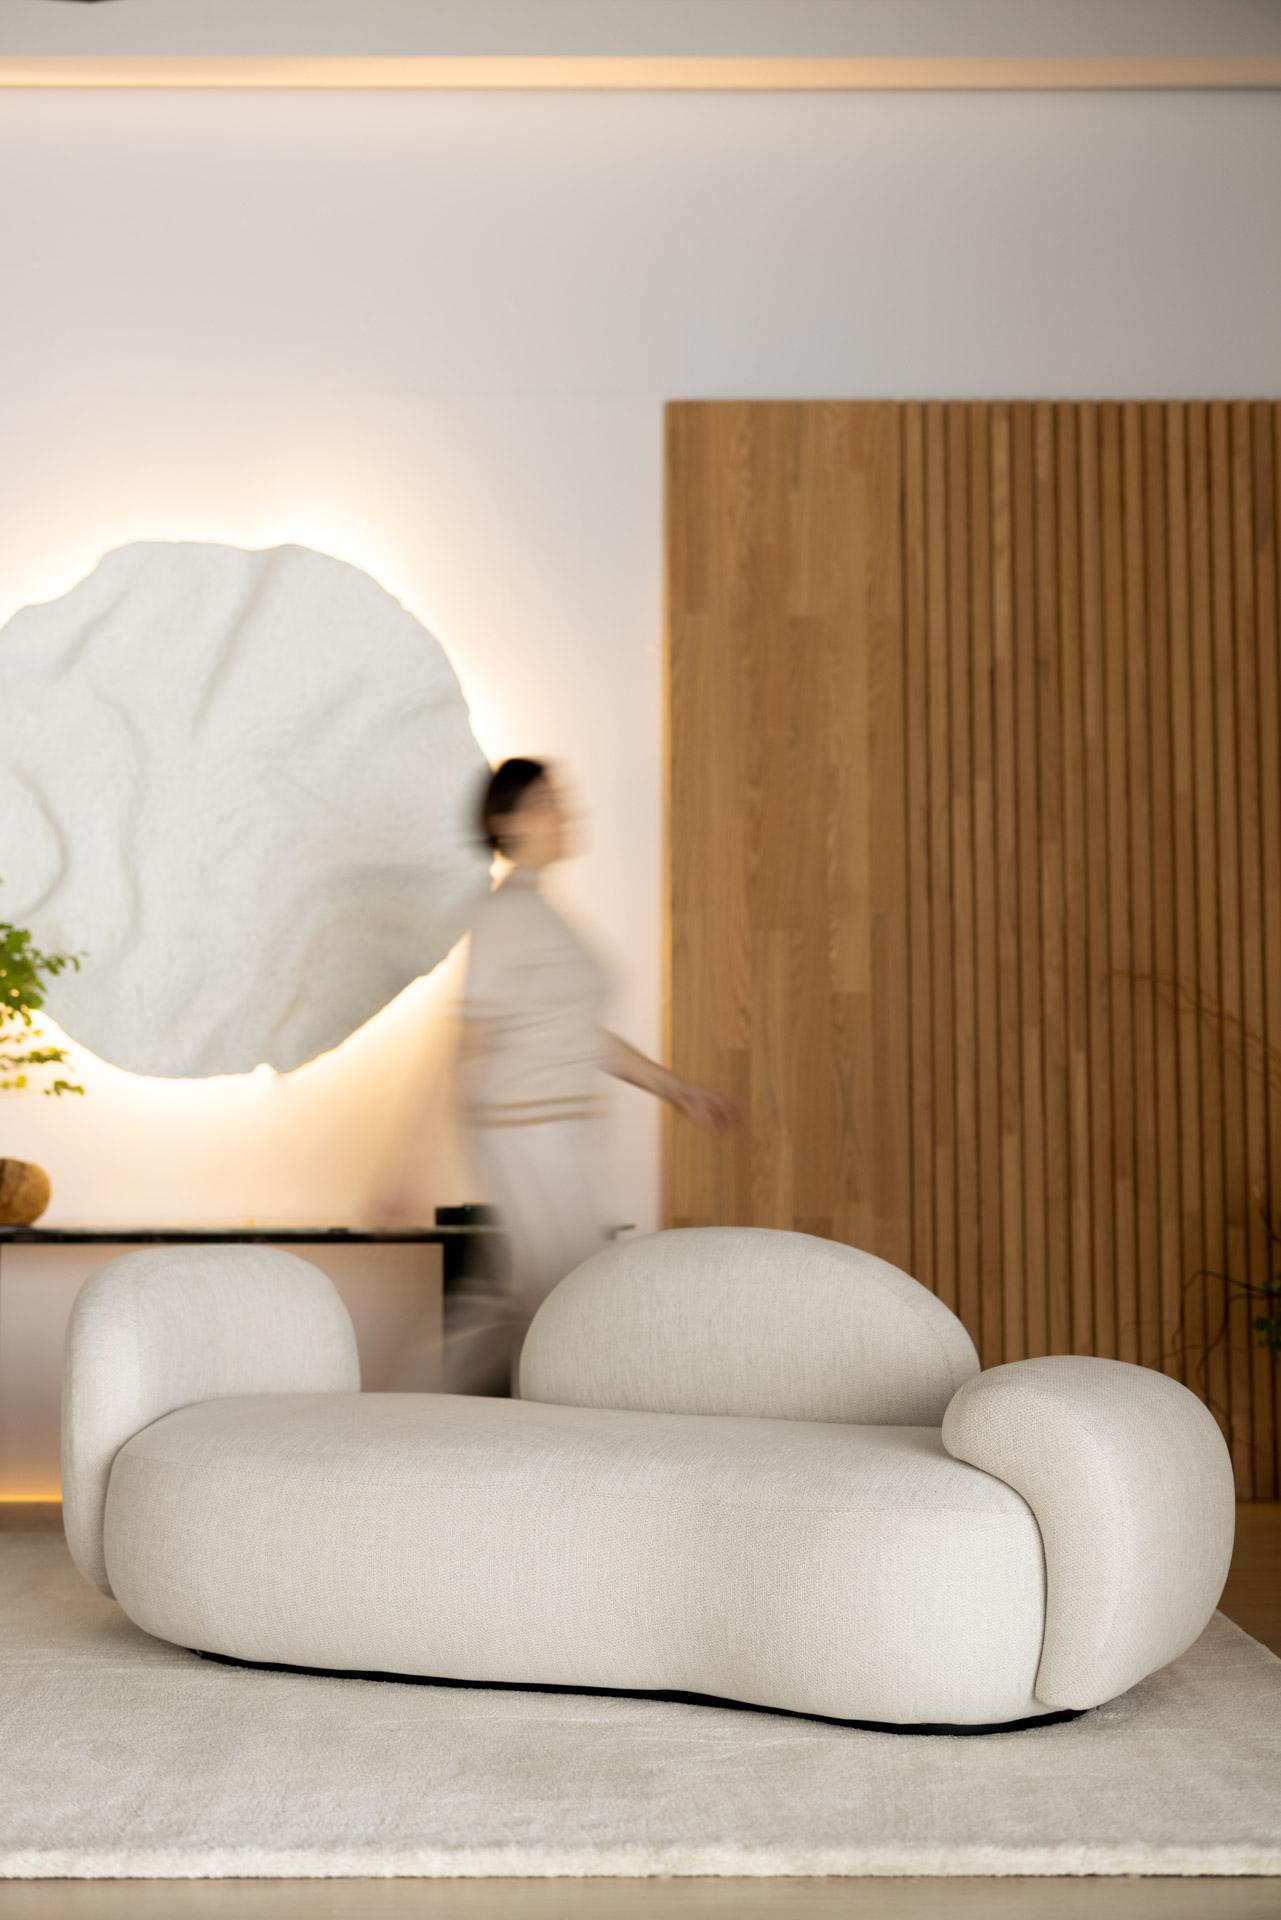 Unfertiges Sofa, Contemporary Collection, handgefertigt in Portugal - Europa von Greenapple.

Das von Rute Martins für die Contemporary Collection entworfene geschwungene Sofa Unfinished ist ein kühnes Statement für alle, die sich trauen, anders zu